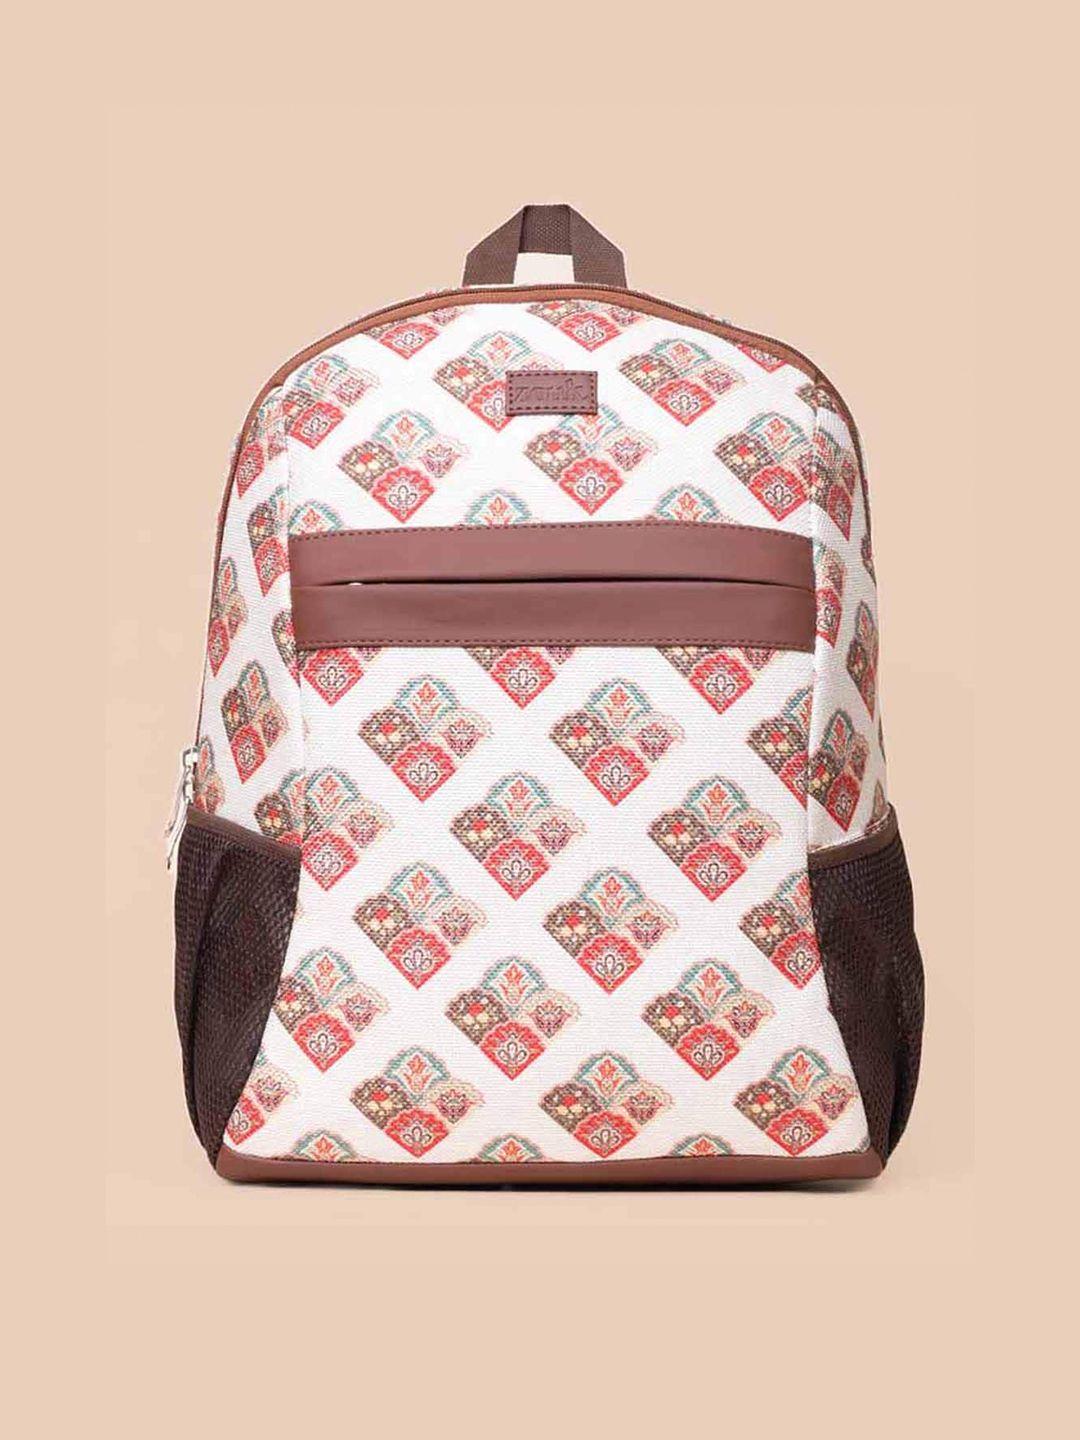 zouk women graphic backpack